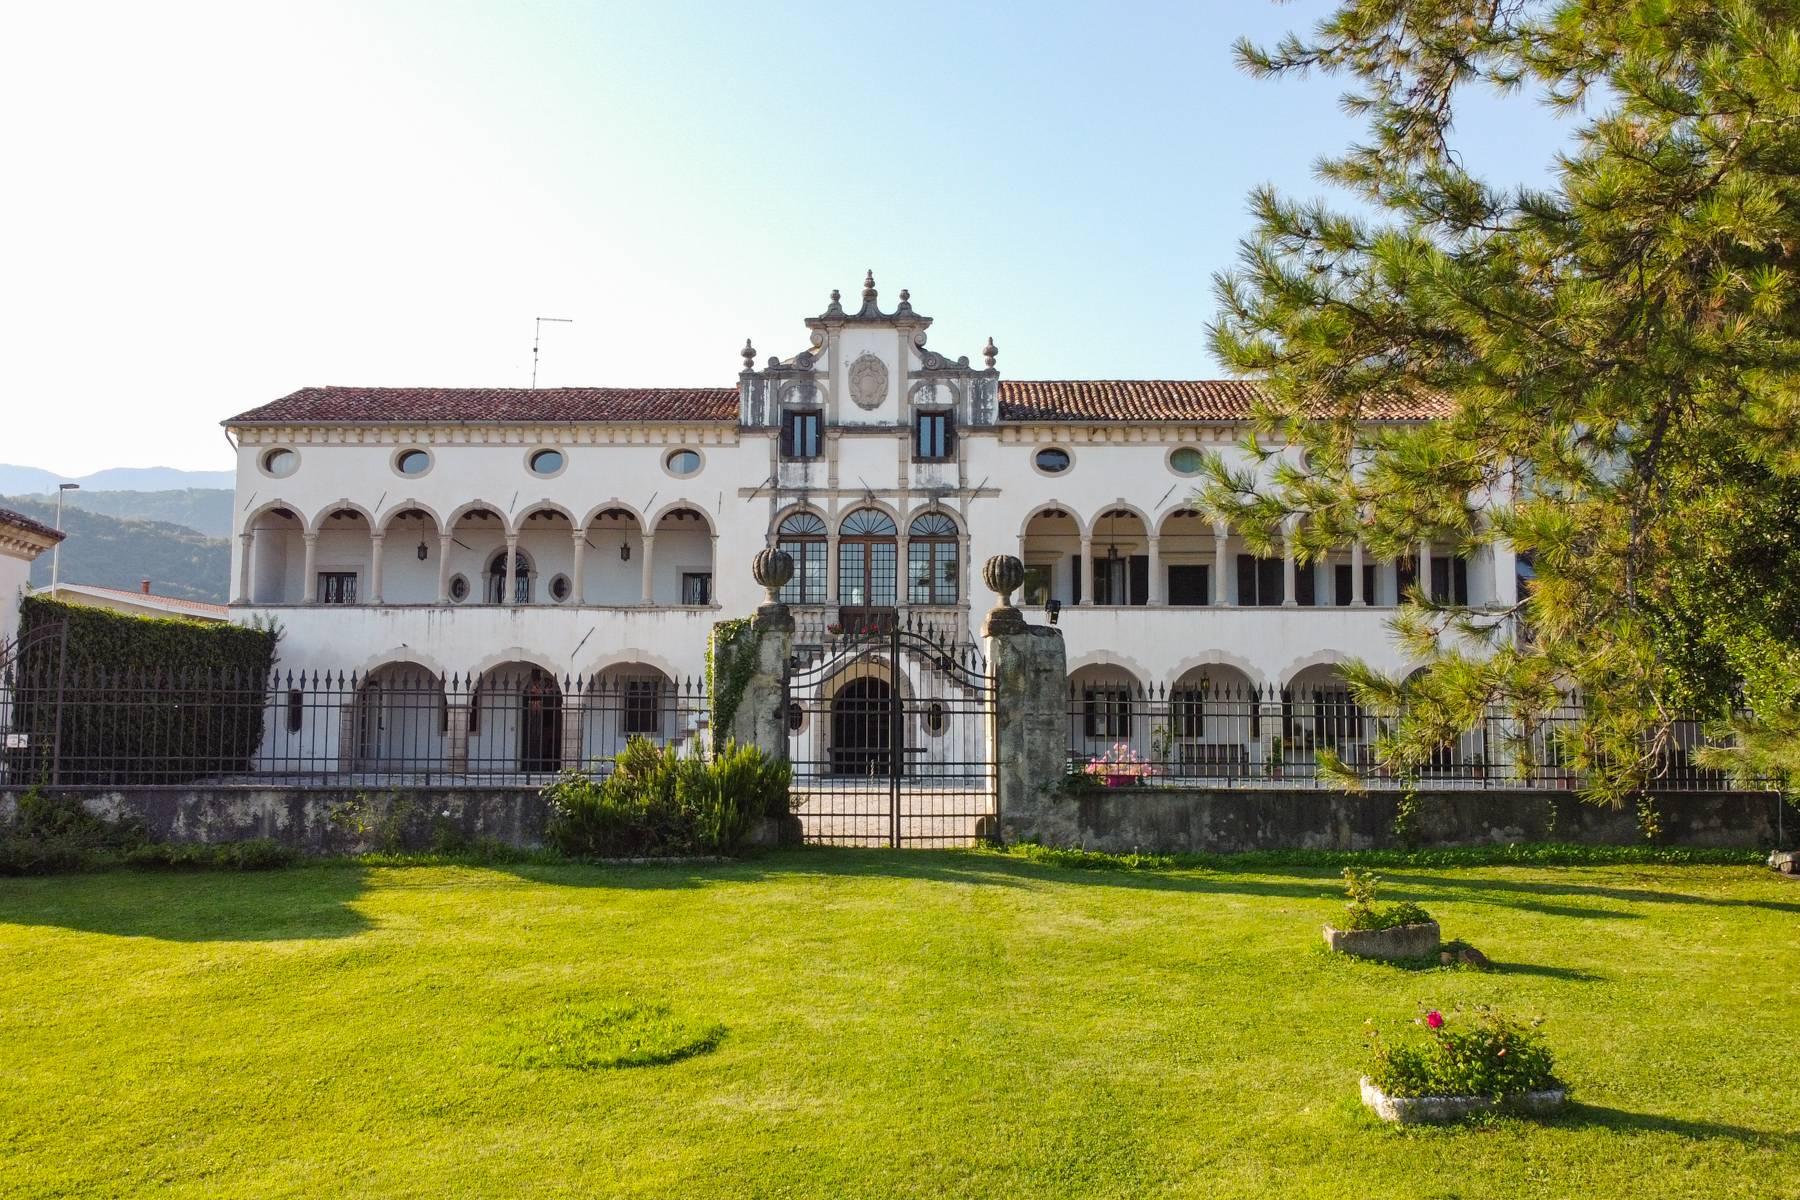 Elegante Villa Veneta del XVII secolo con parco ed adiacenze nelle colline vittoriesi - 1